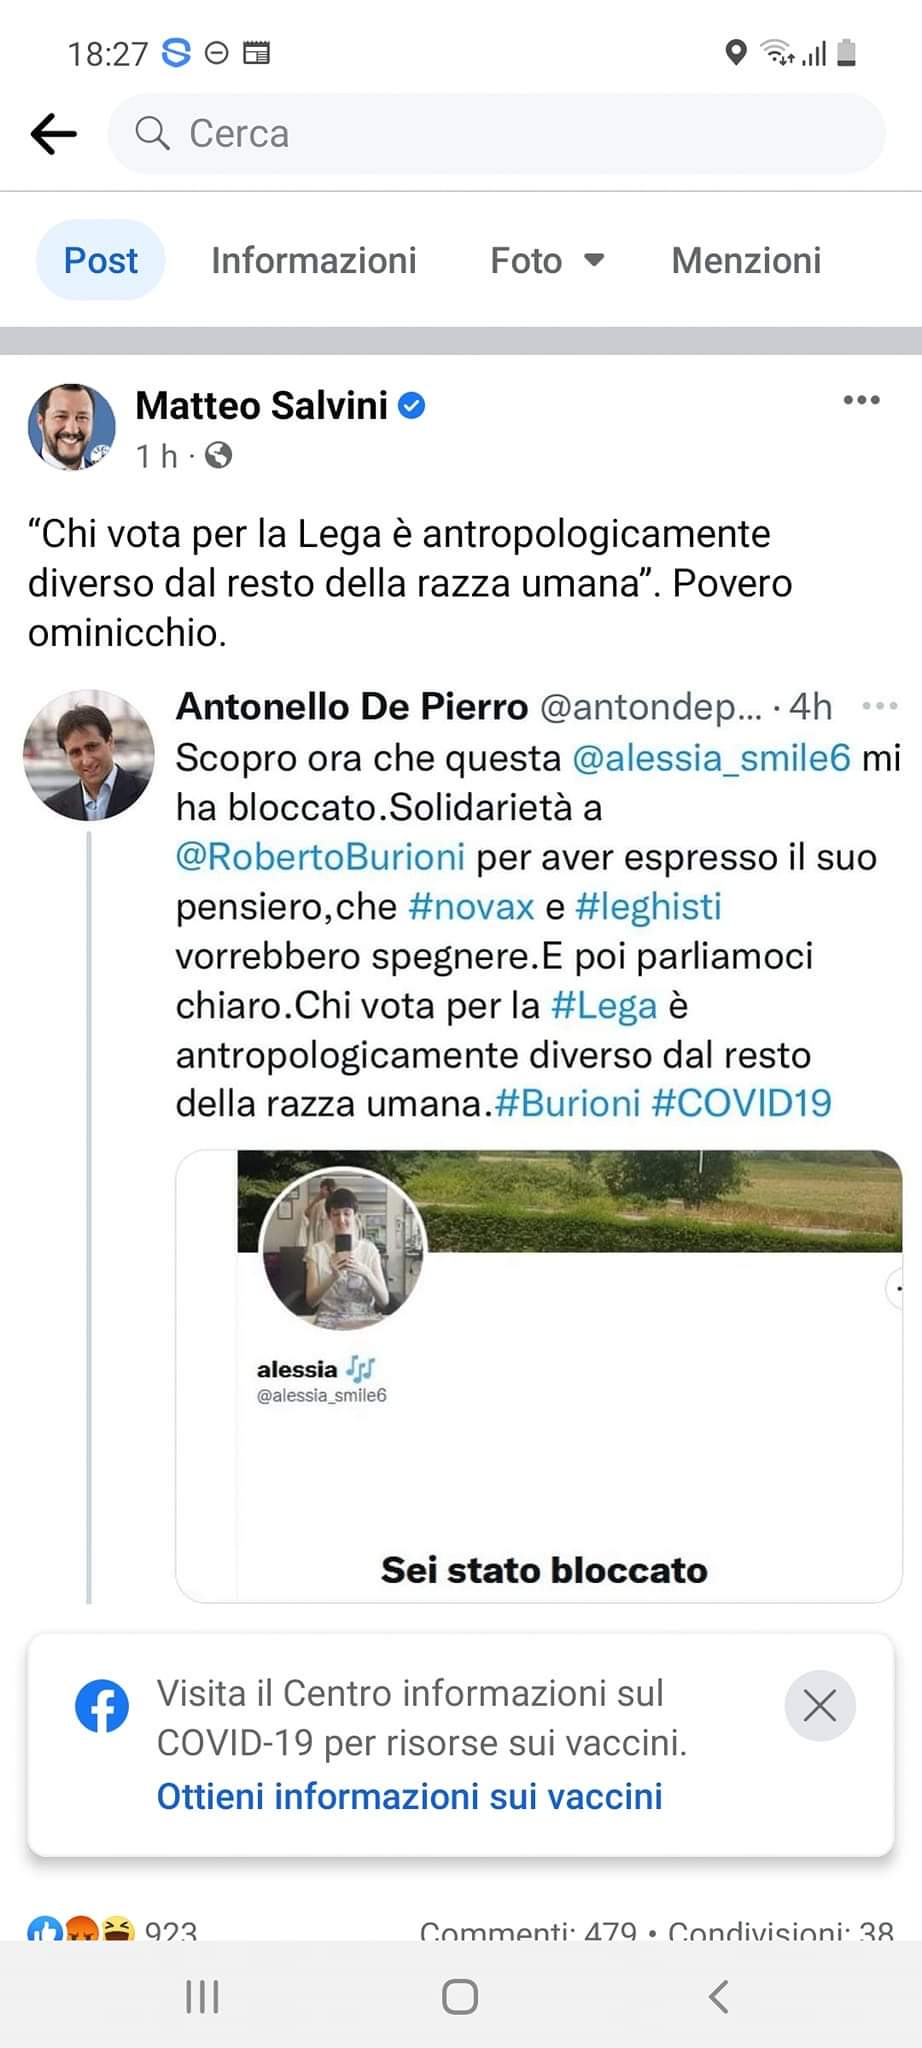 Salvini attacca De Pierro sui social ma sfugge al confronto diretto